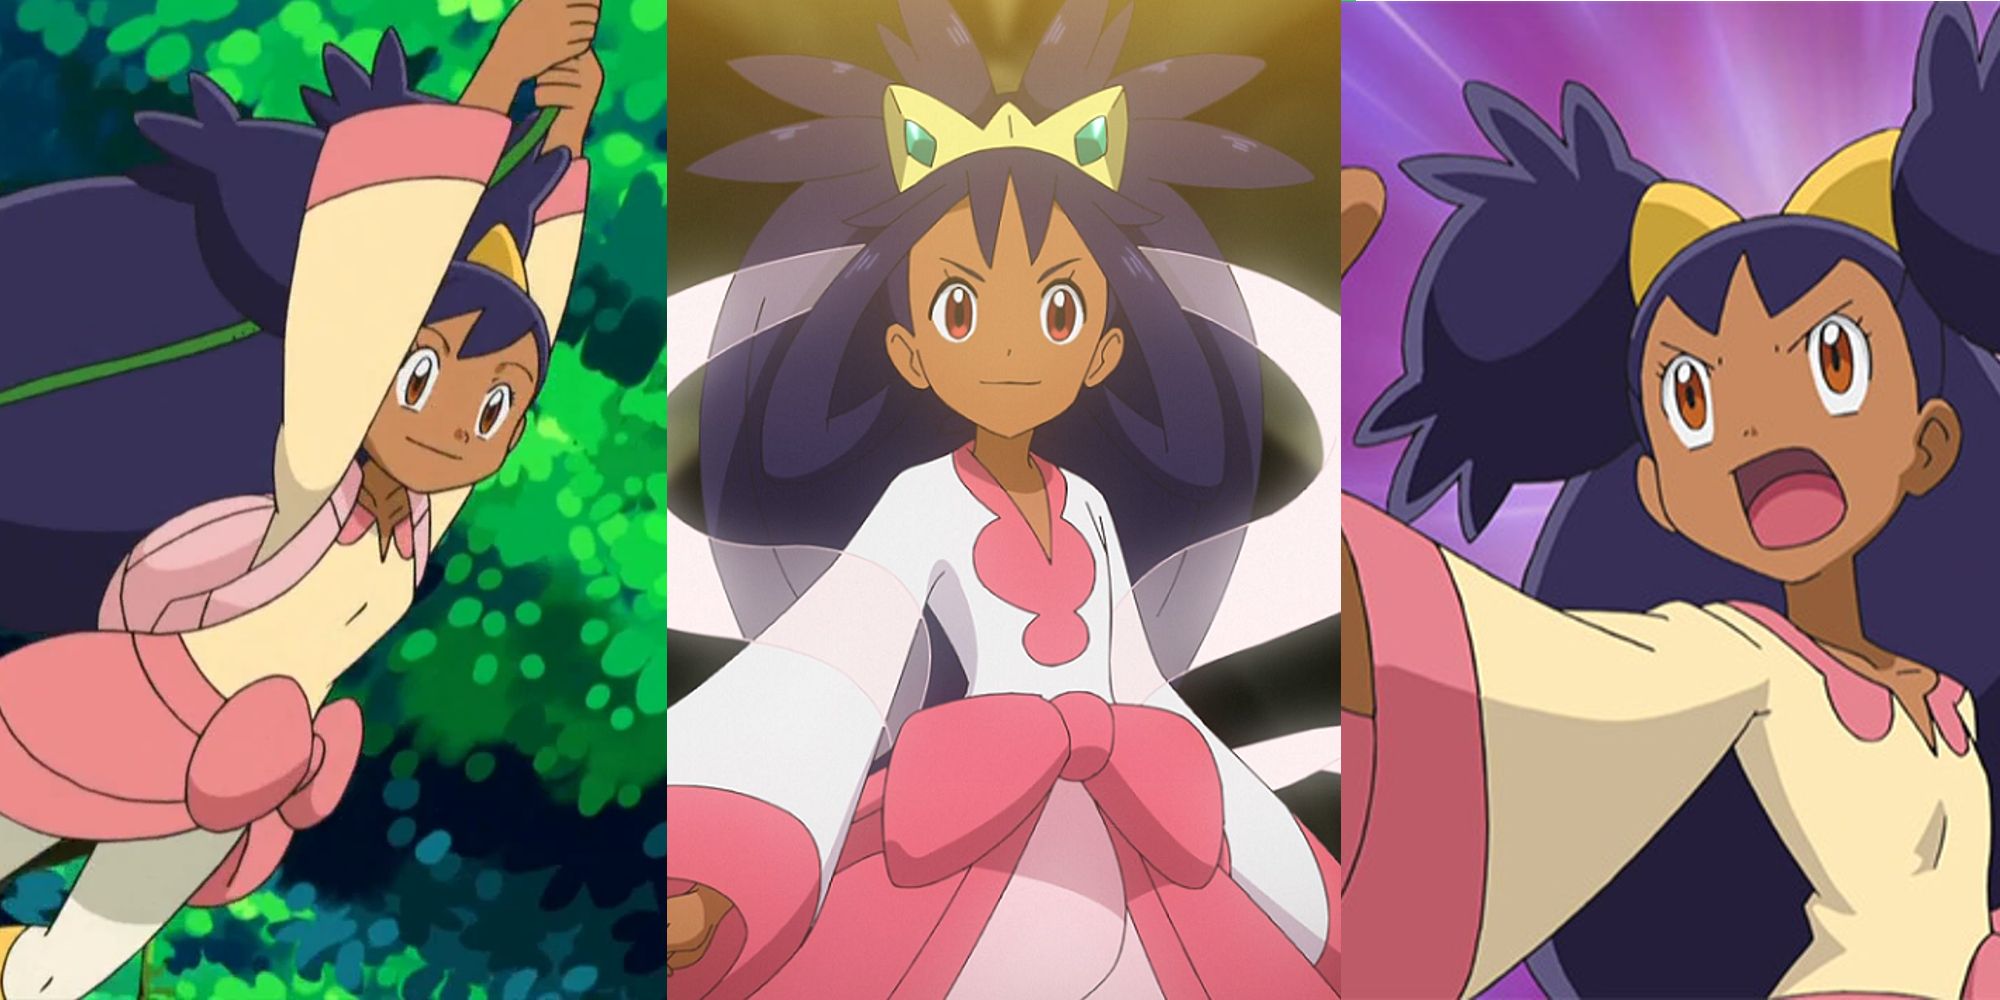 Айрис качается между деревьями в аниме; Айрис появляется в своем костюме чемпиона Unova в Pokemon Journeys; Айрис зовет посреди битвы покемонов